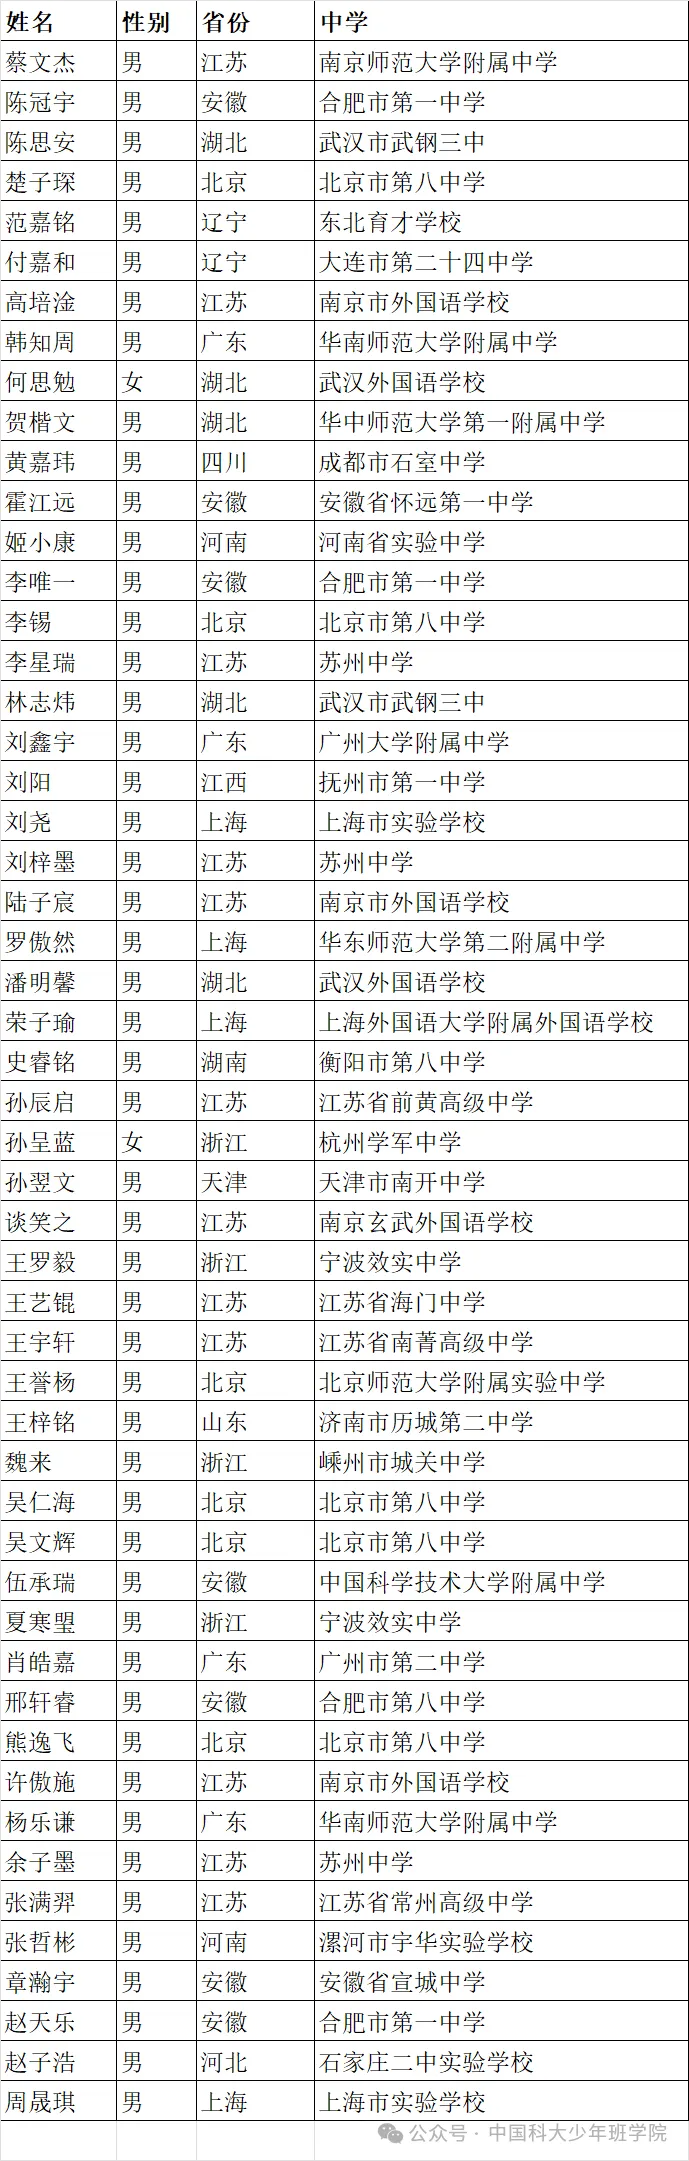 中国科学技术大学2024年少年班录取名单公示